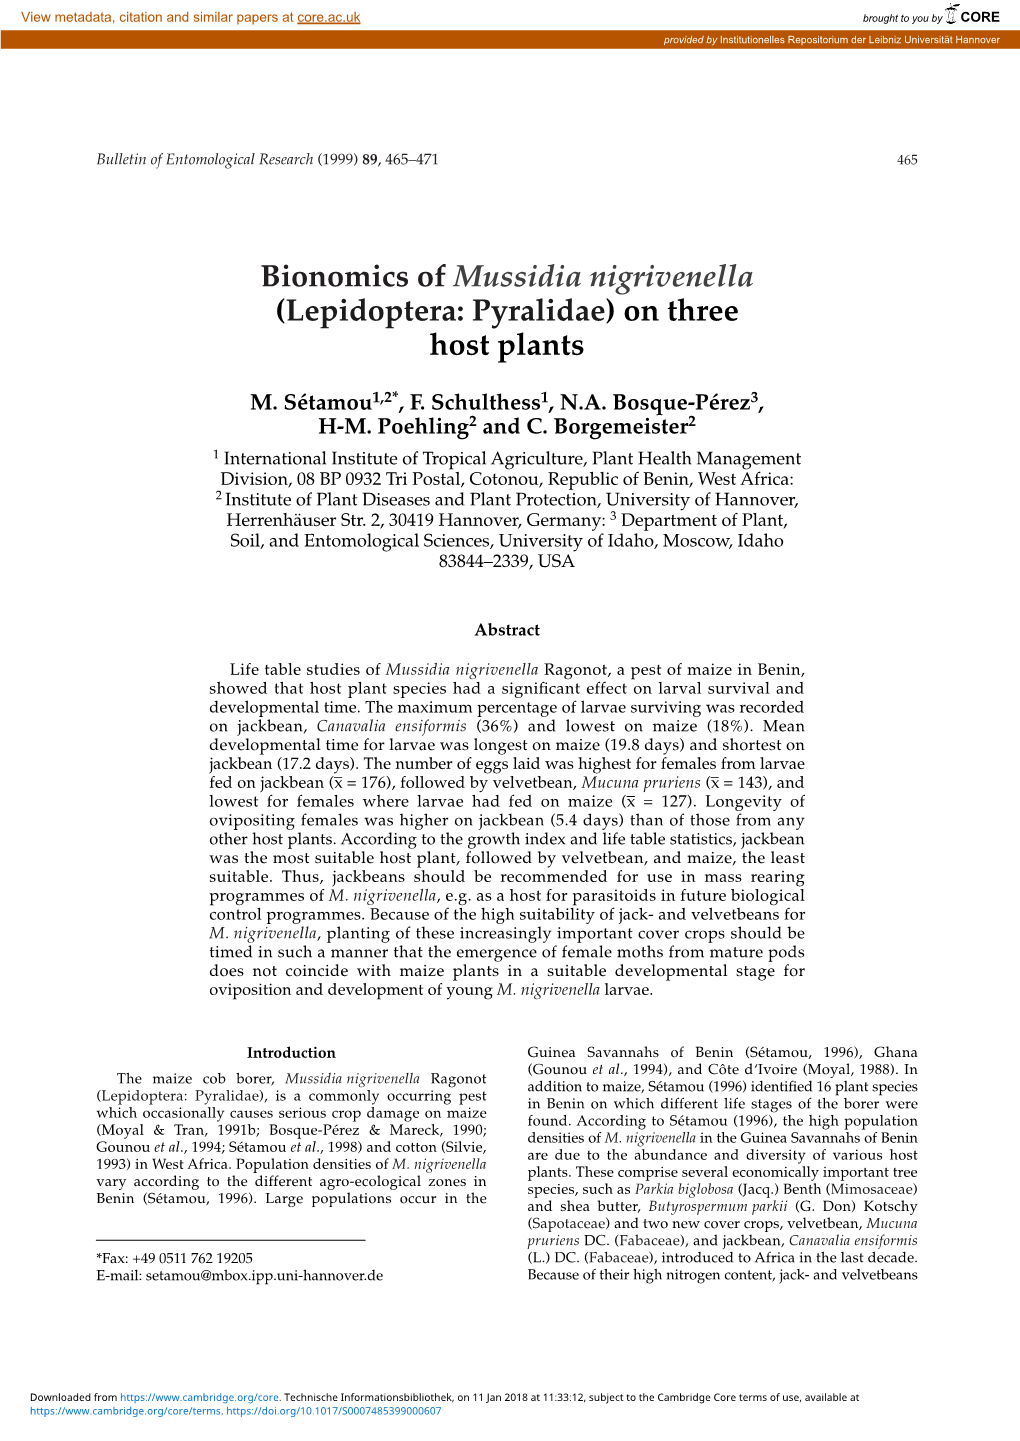 Bionomics of Mussidia Nigrivenella (Lepidoptera: Pyralidae) on Three Host Plants